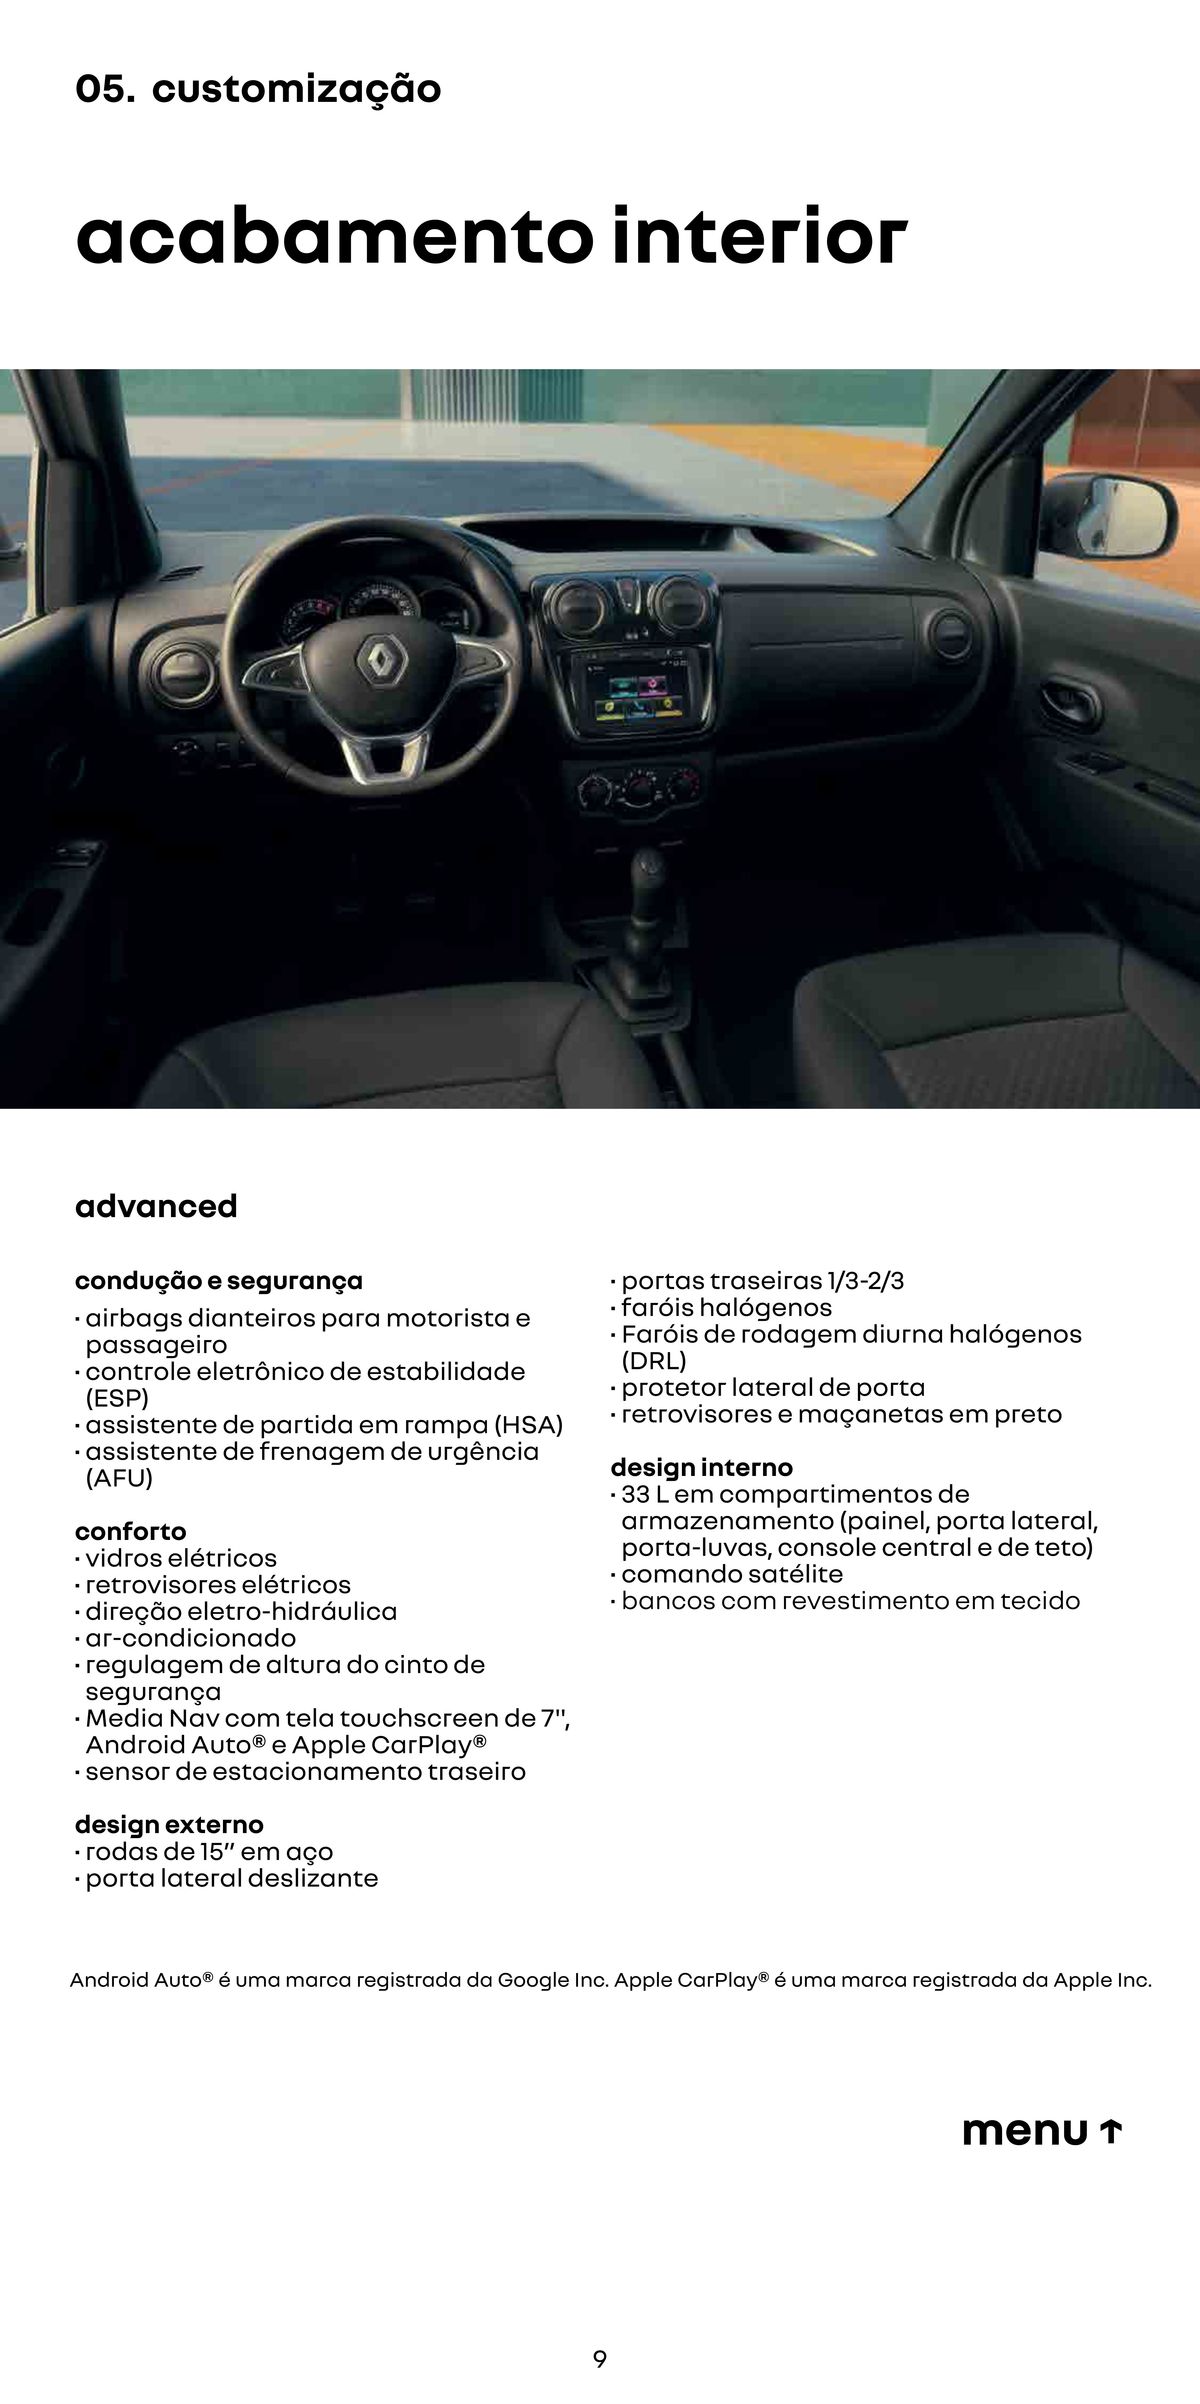 Descontos em customização de acabamento interior para carros Renault